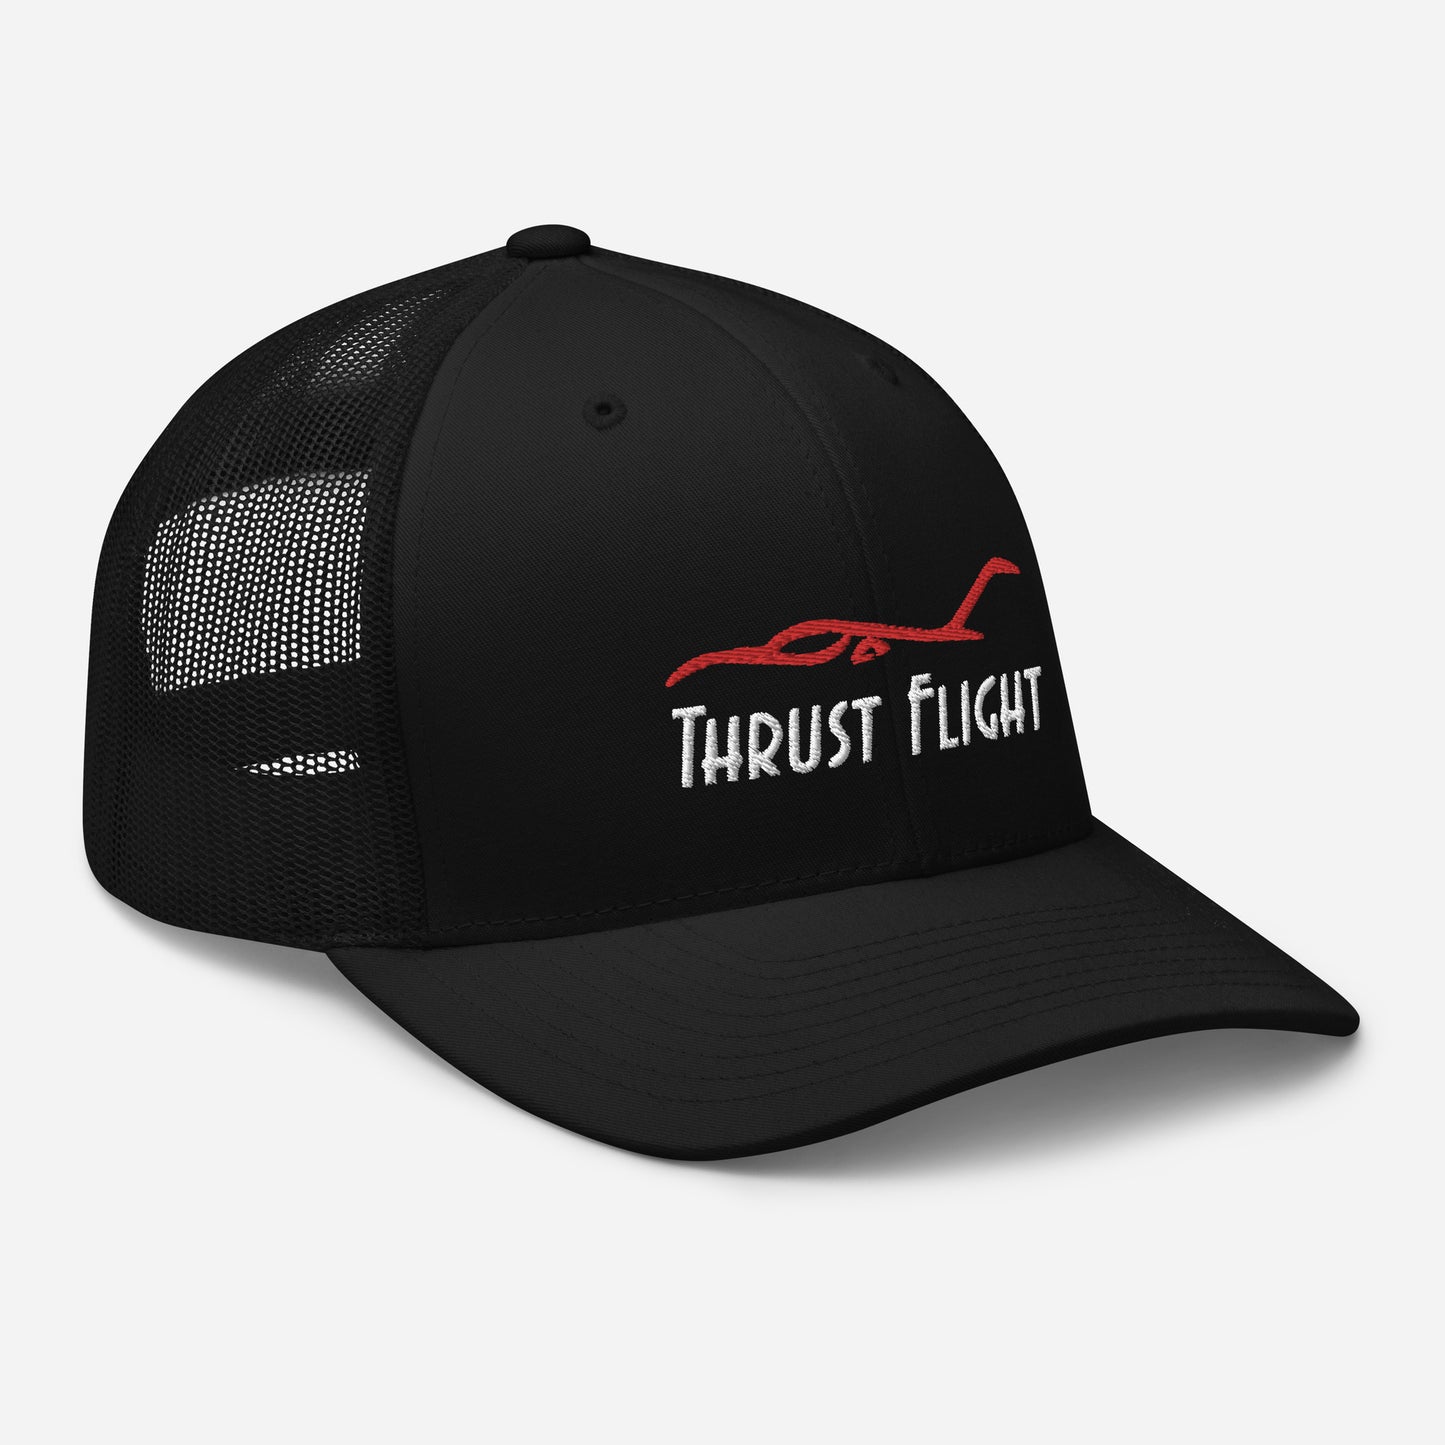 Thrust Flight Trucker Cap